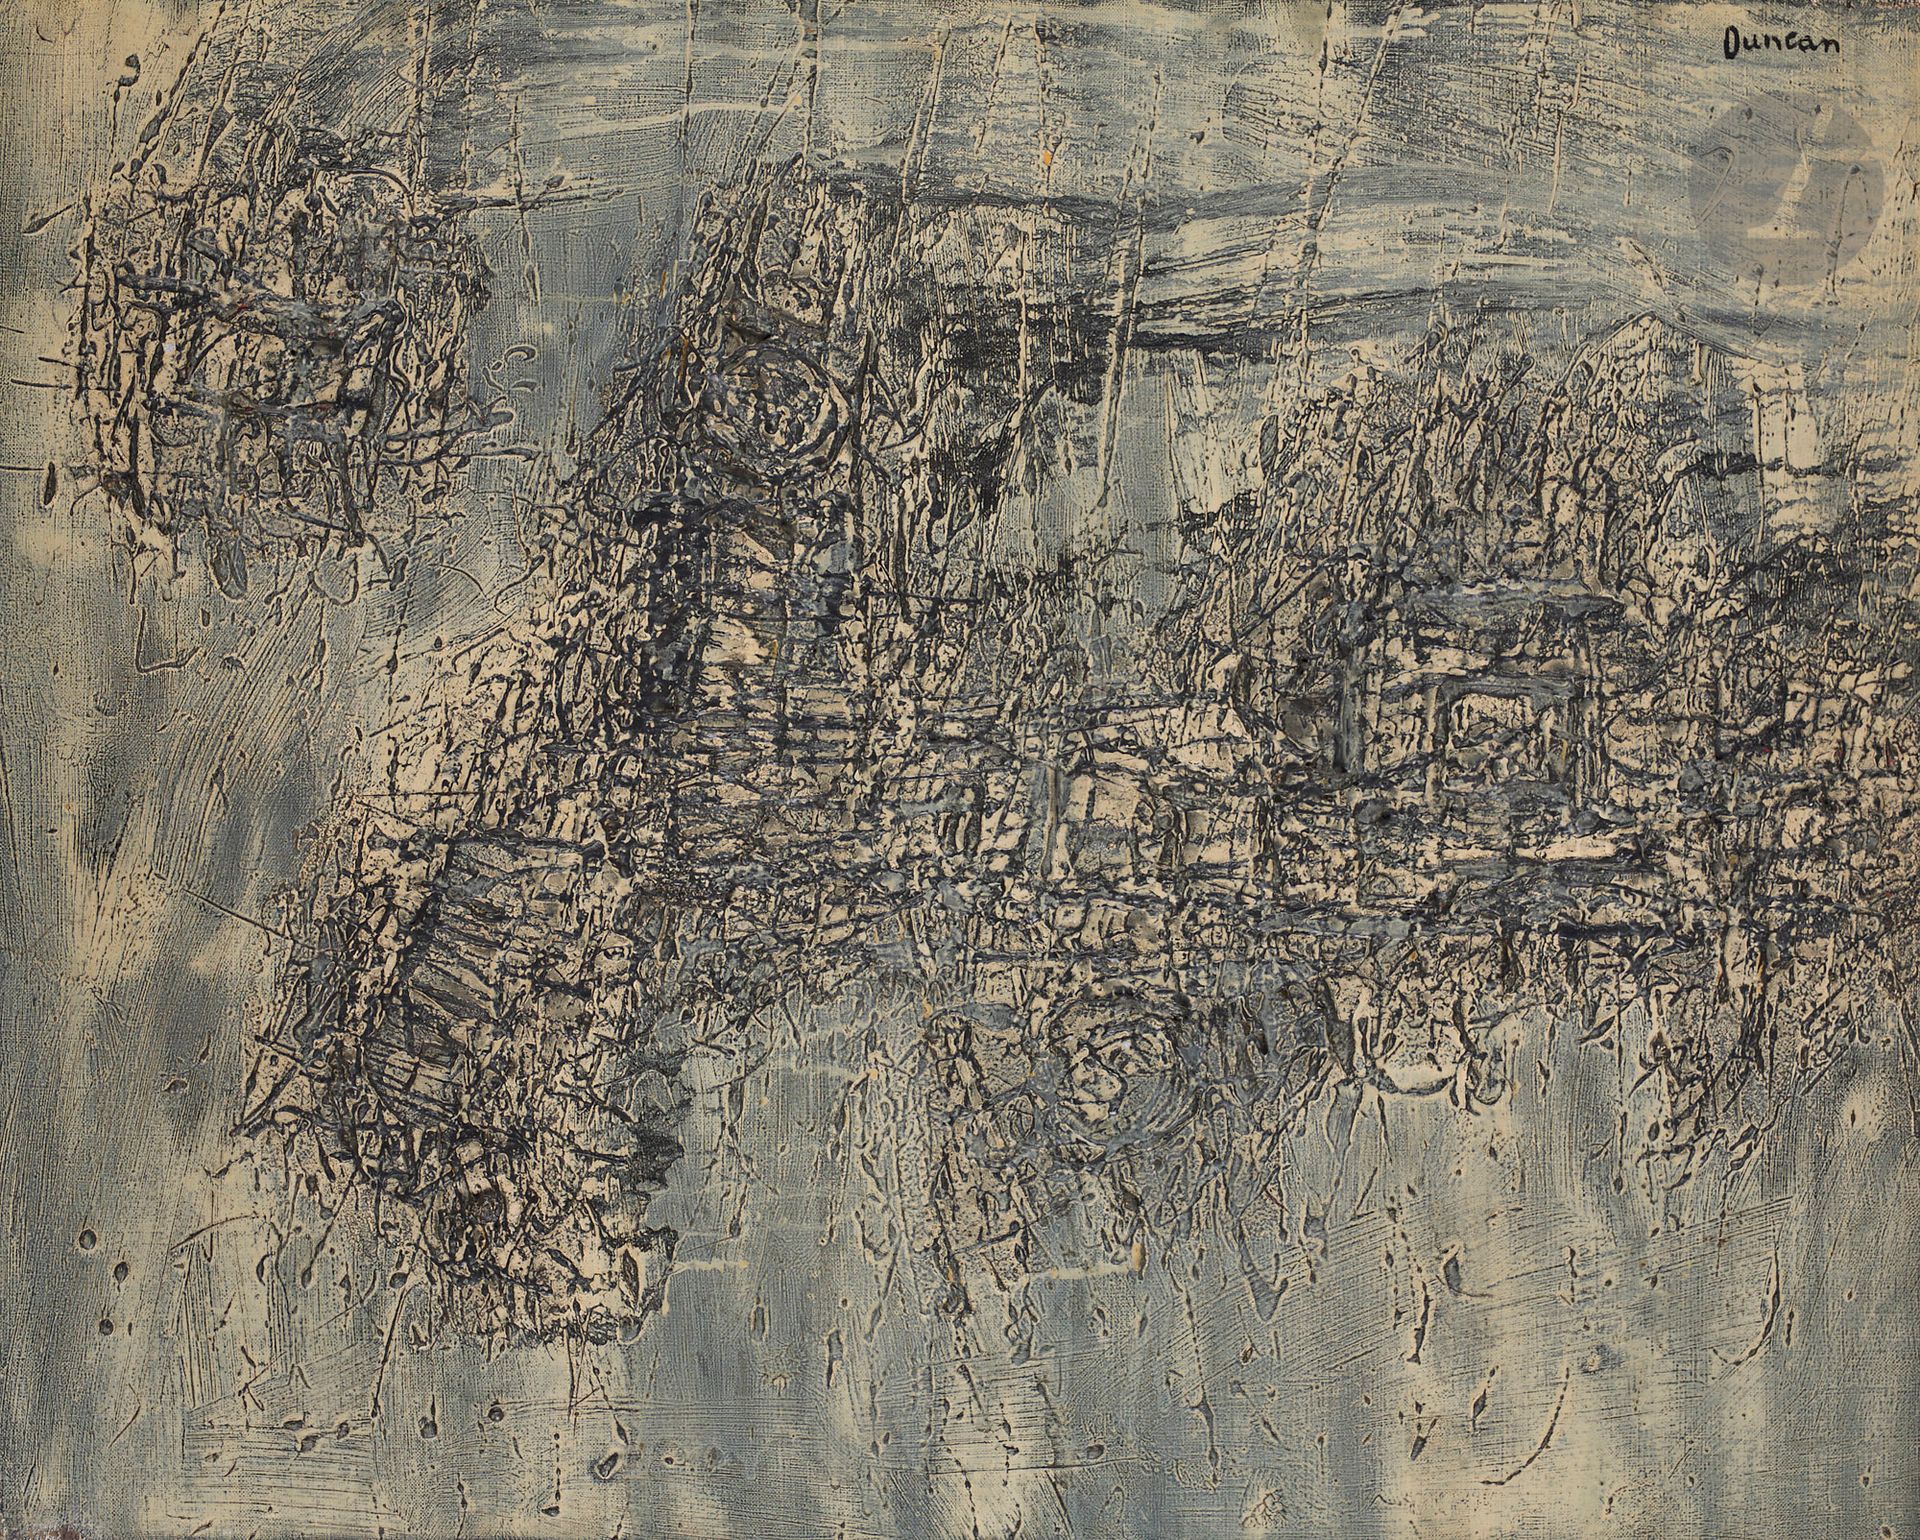 Null Joseph DUNCAN [inglés] (nacido en 1920
)Delimitación, 1961Óleo
sobre lienzo&hellip;